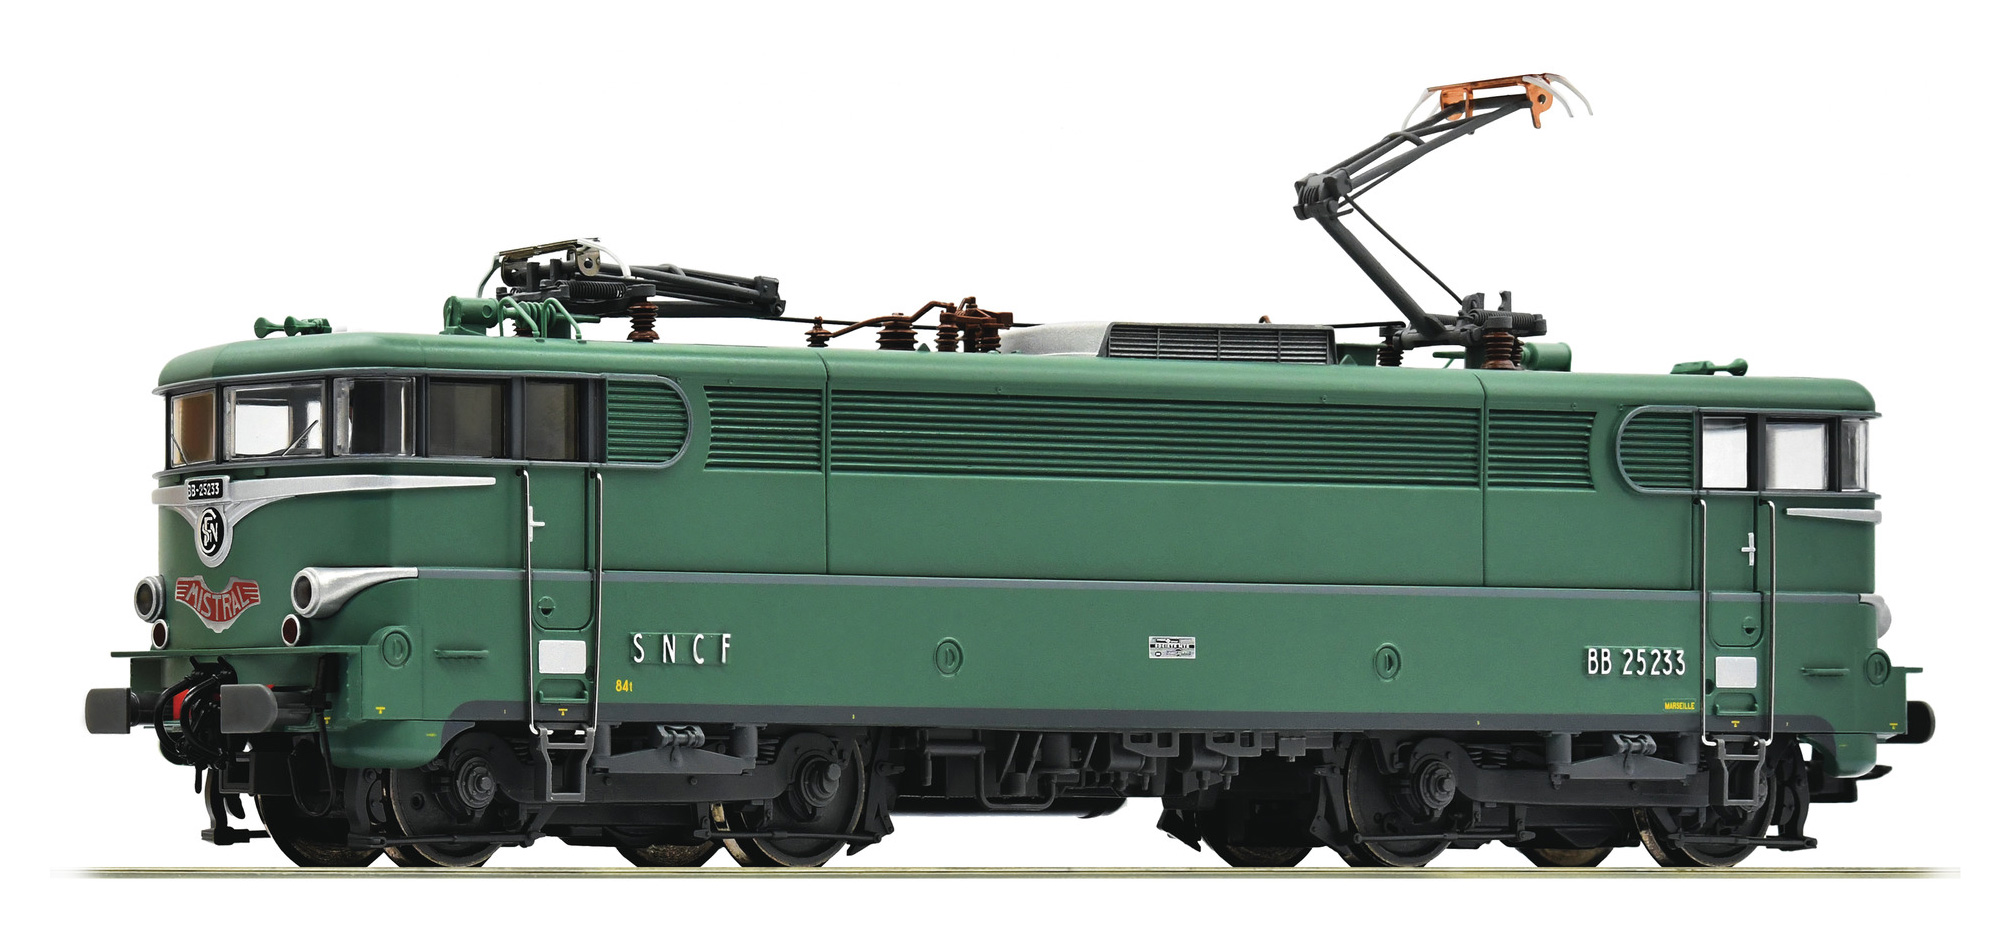 Locomotive électrique SNCF‚ BB25233‚ livrée verte d’origine à jupes‚ digital DCC sound